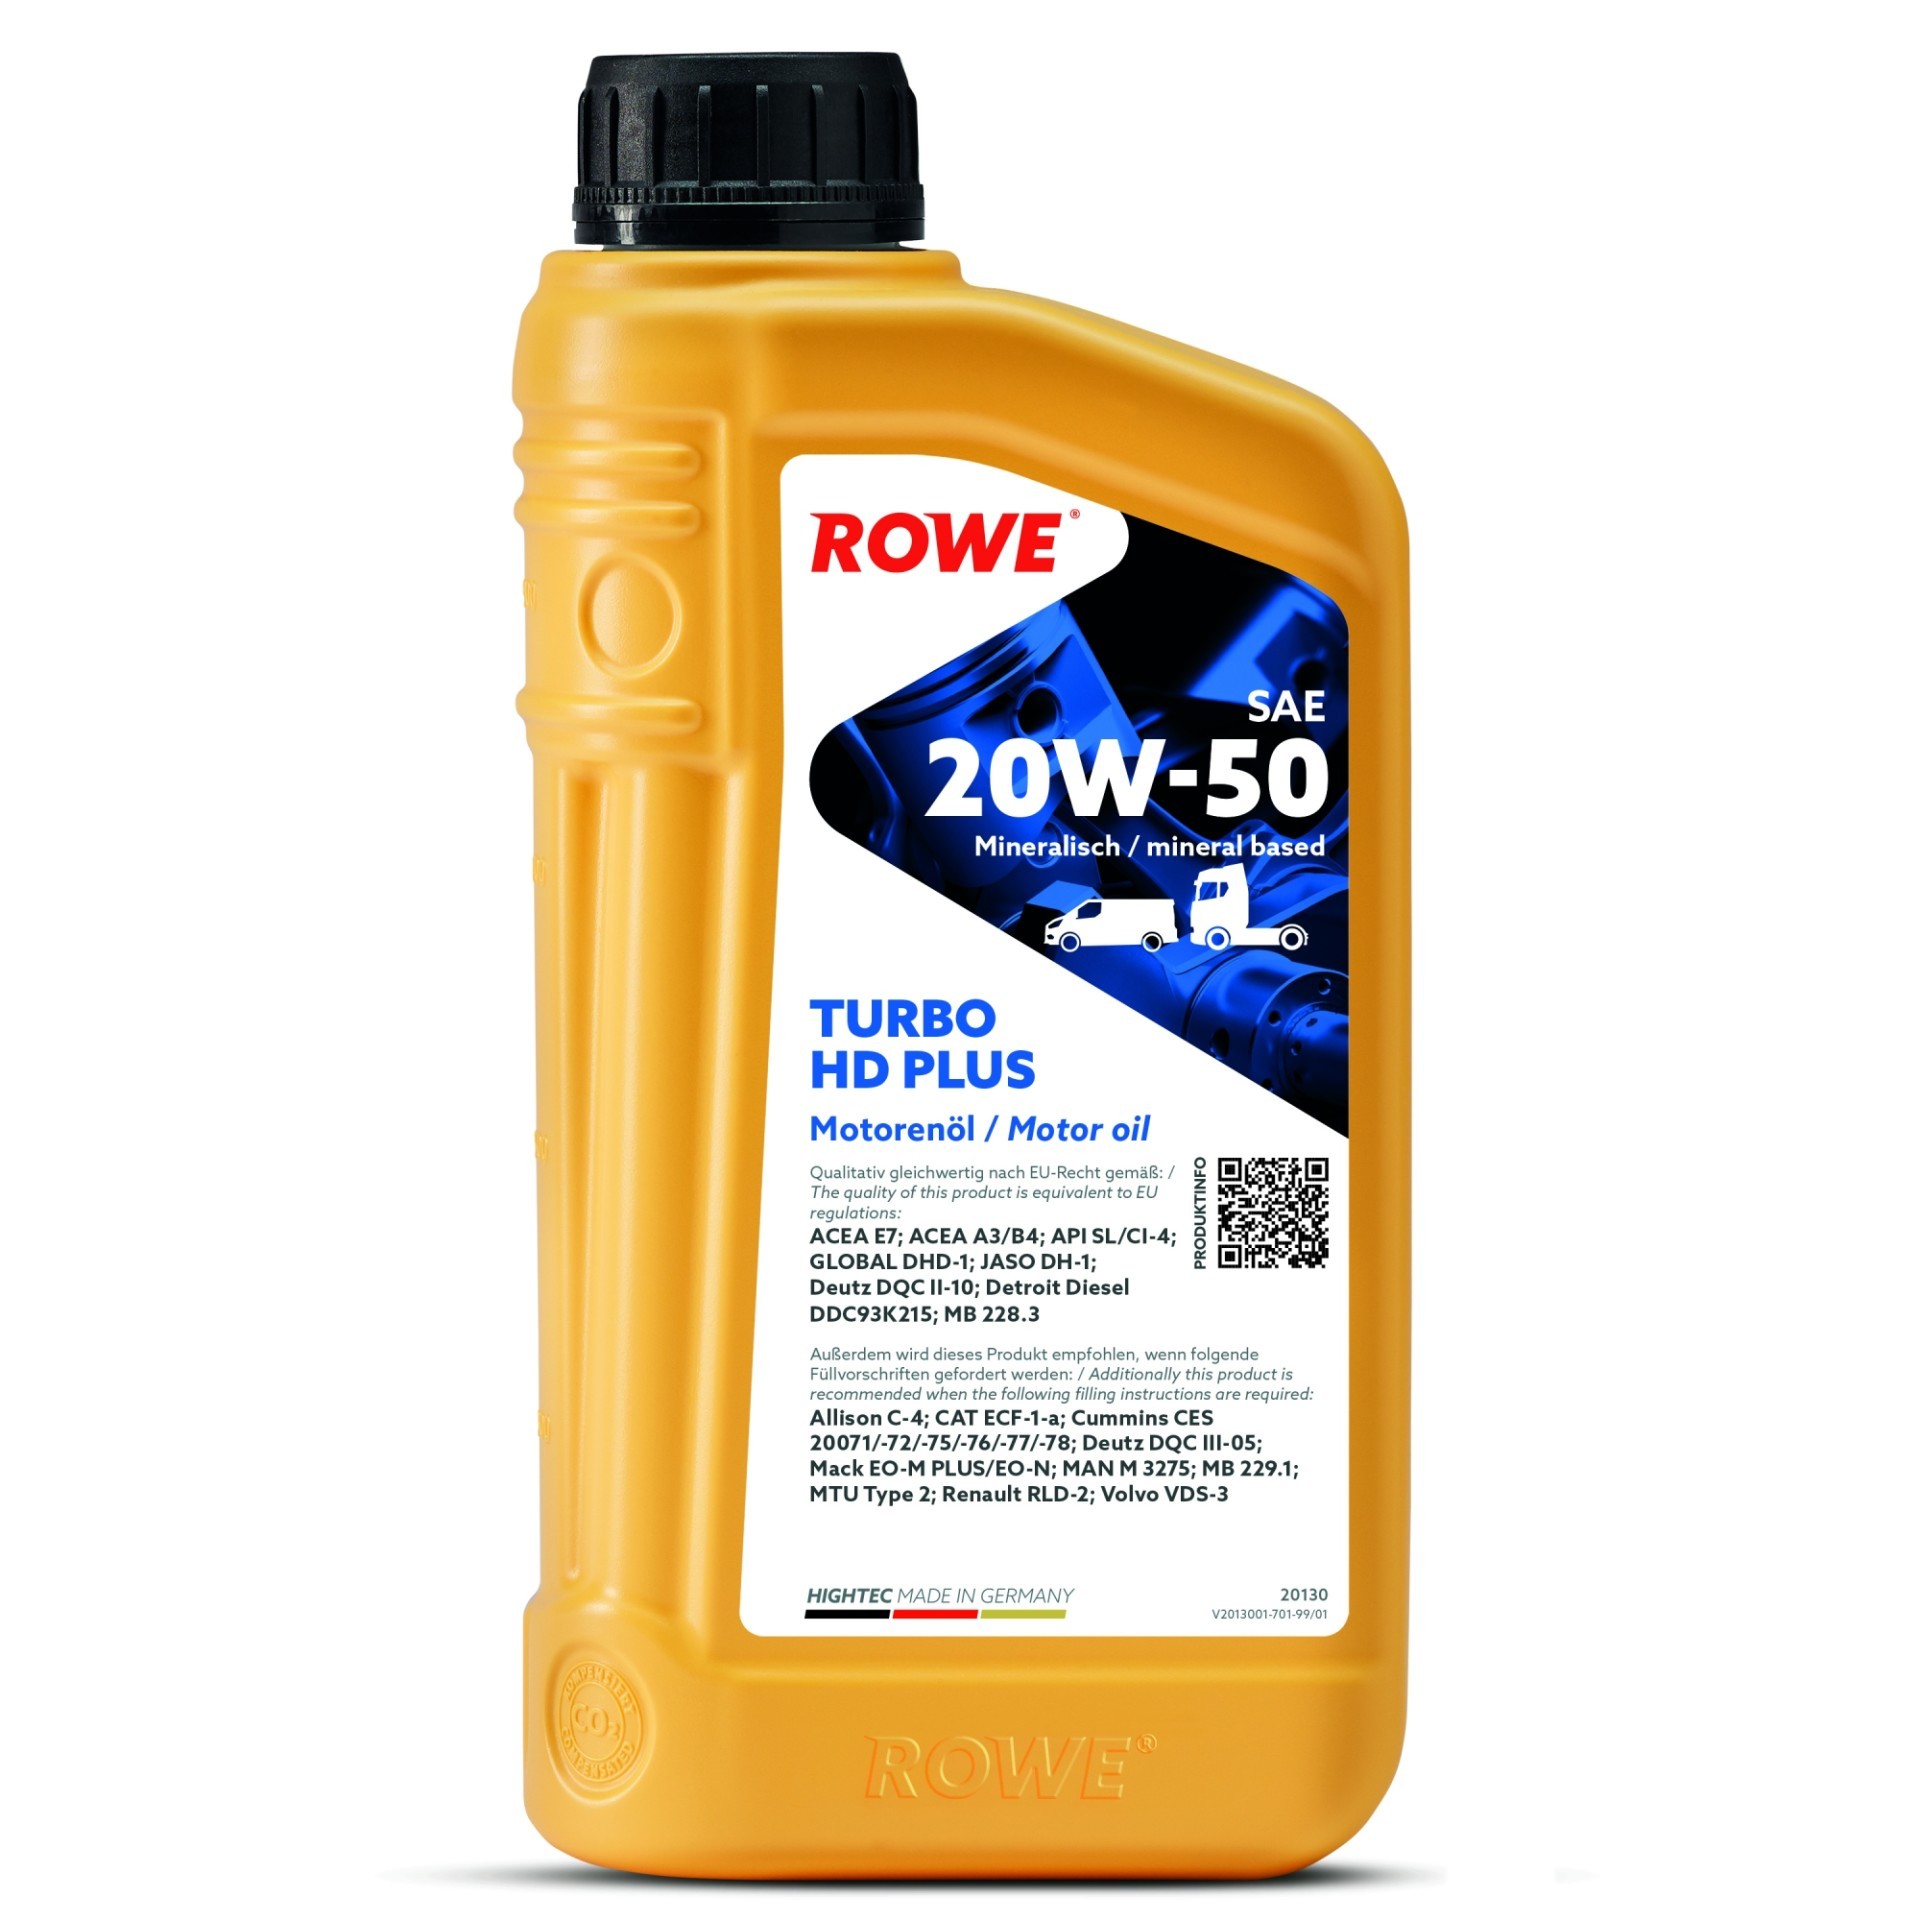 ROWE HIGHTEC TURBO HD SAE 20W-50 PLUS (20130) 1.0L